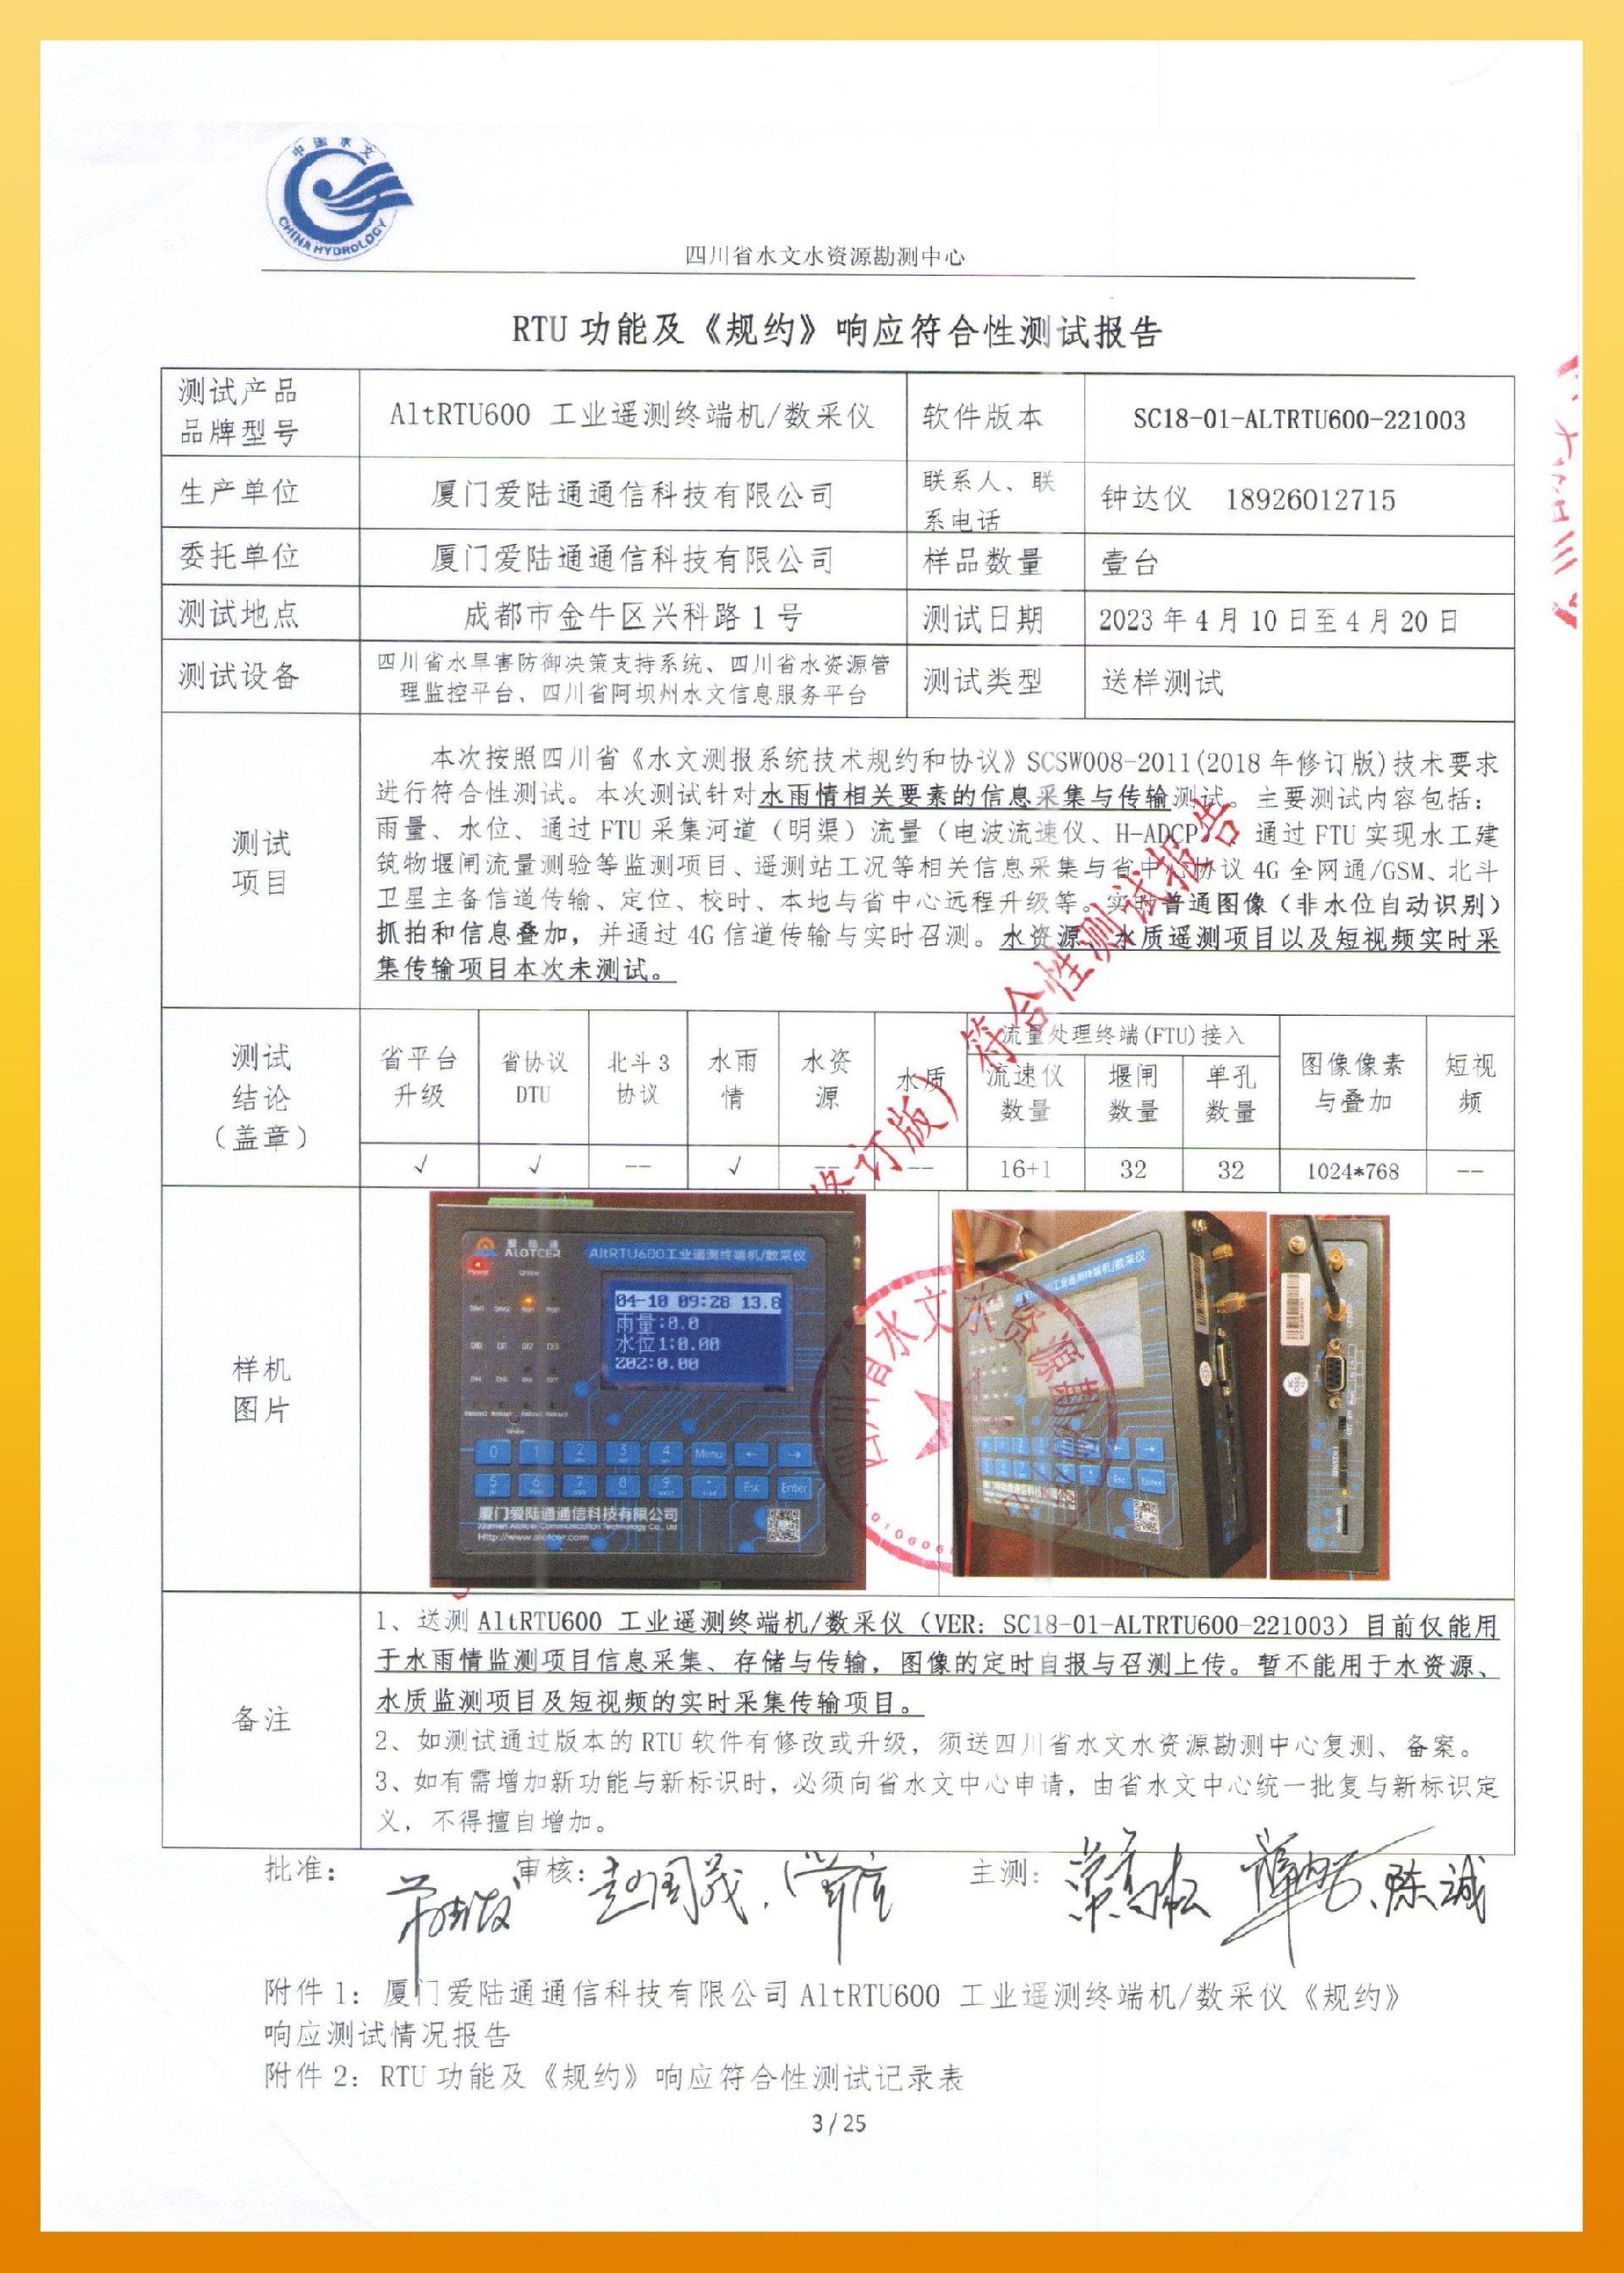 愛陸通-四川水文測報系統技術規約和協議 SCSW008-2011-3.jpg